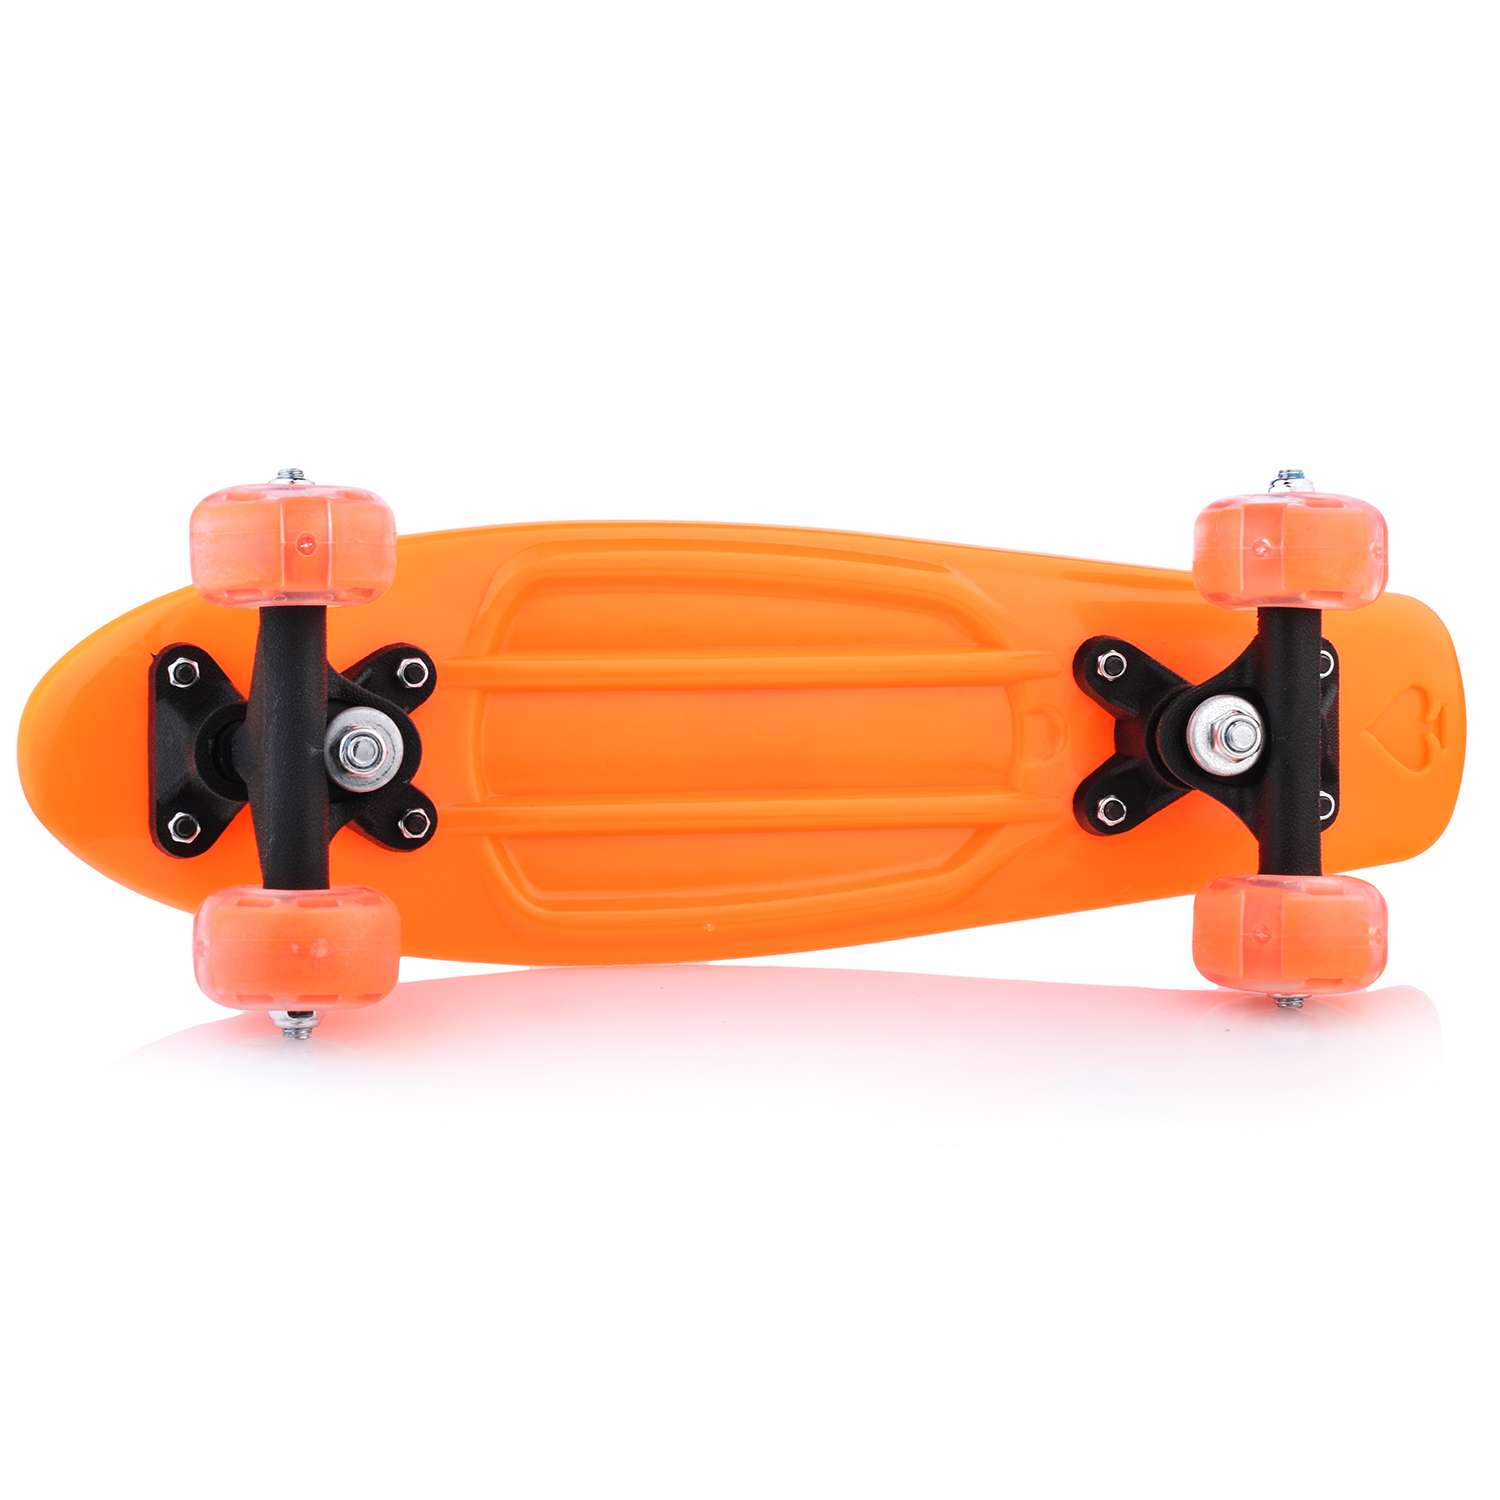 Скейтборд ROCKET детский оранжевый 42 см колеса PVC светятся - фото 3